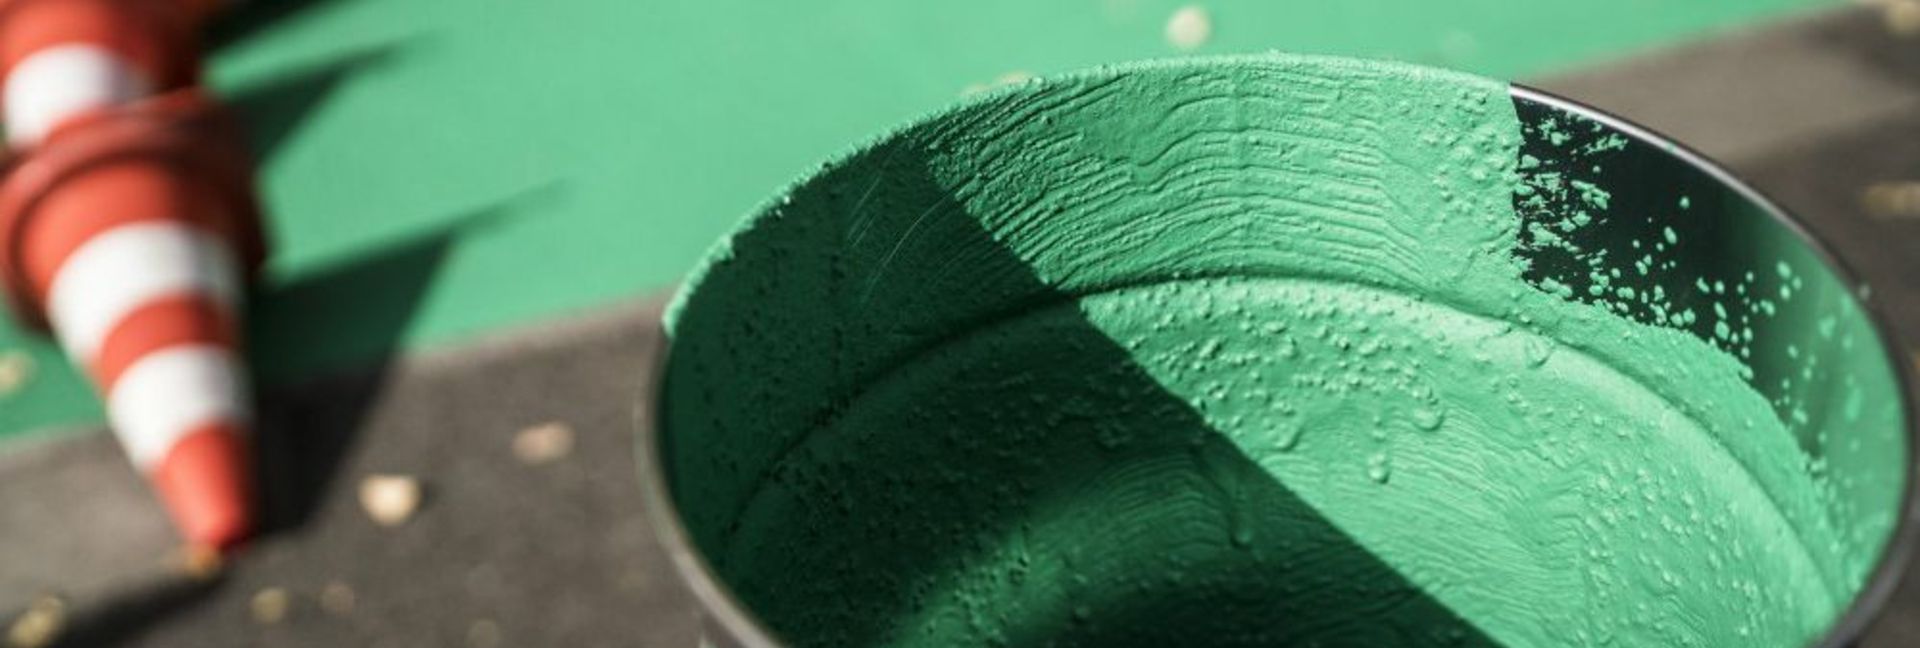 Farbeimer mit verkehrsgrüner Farbe für Beschichtung von Radweg